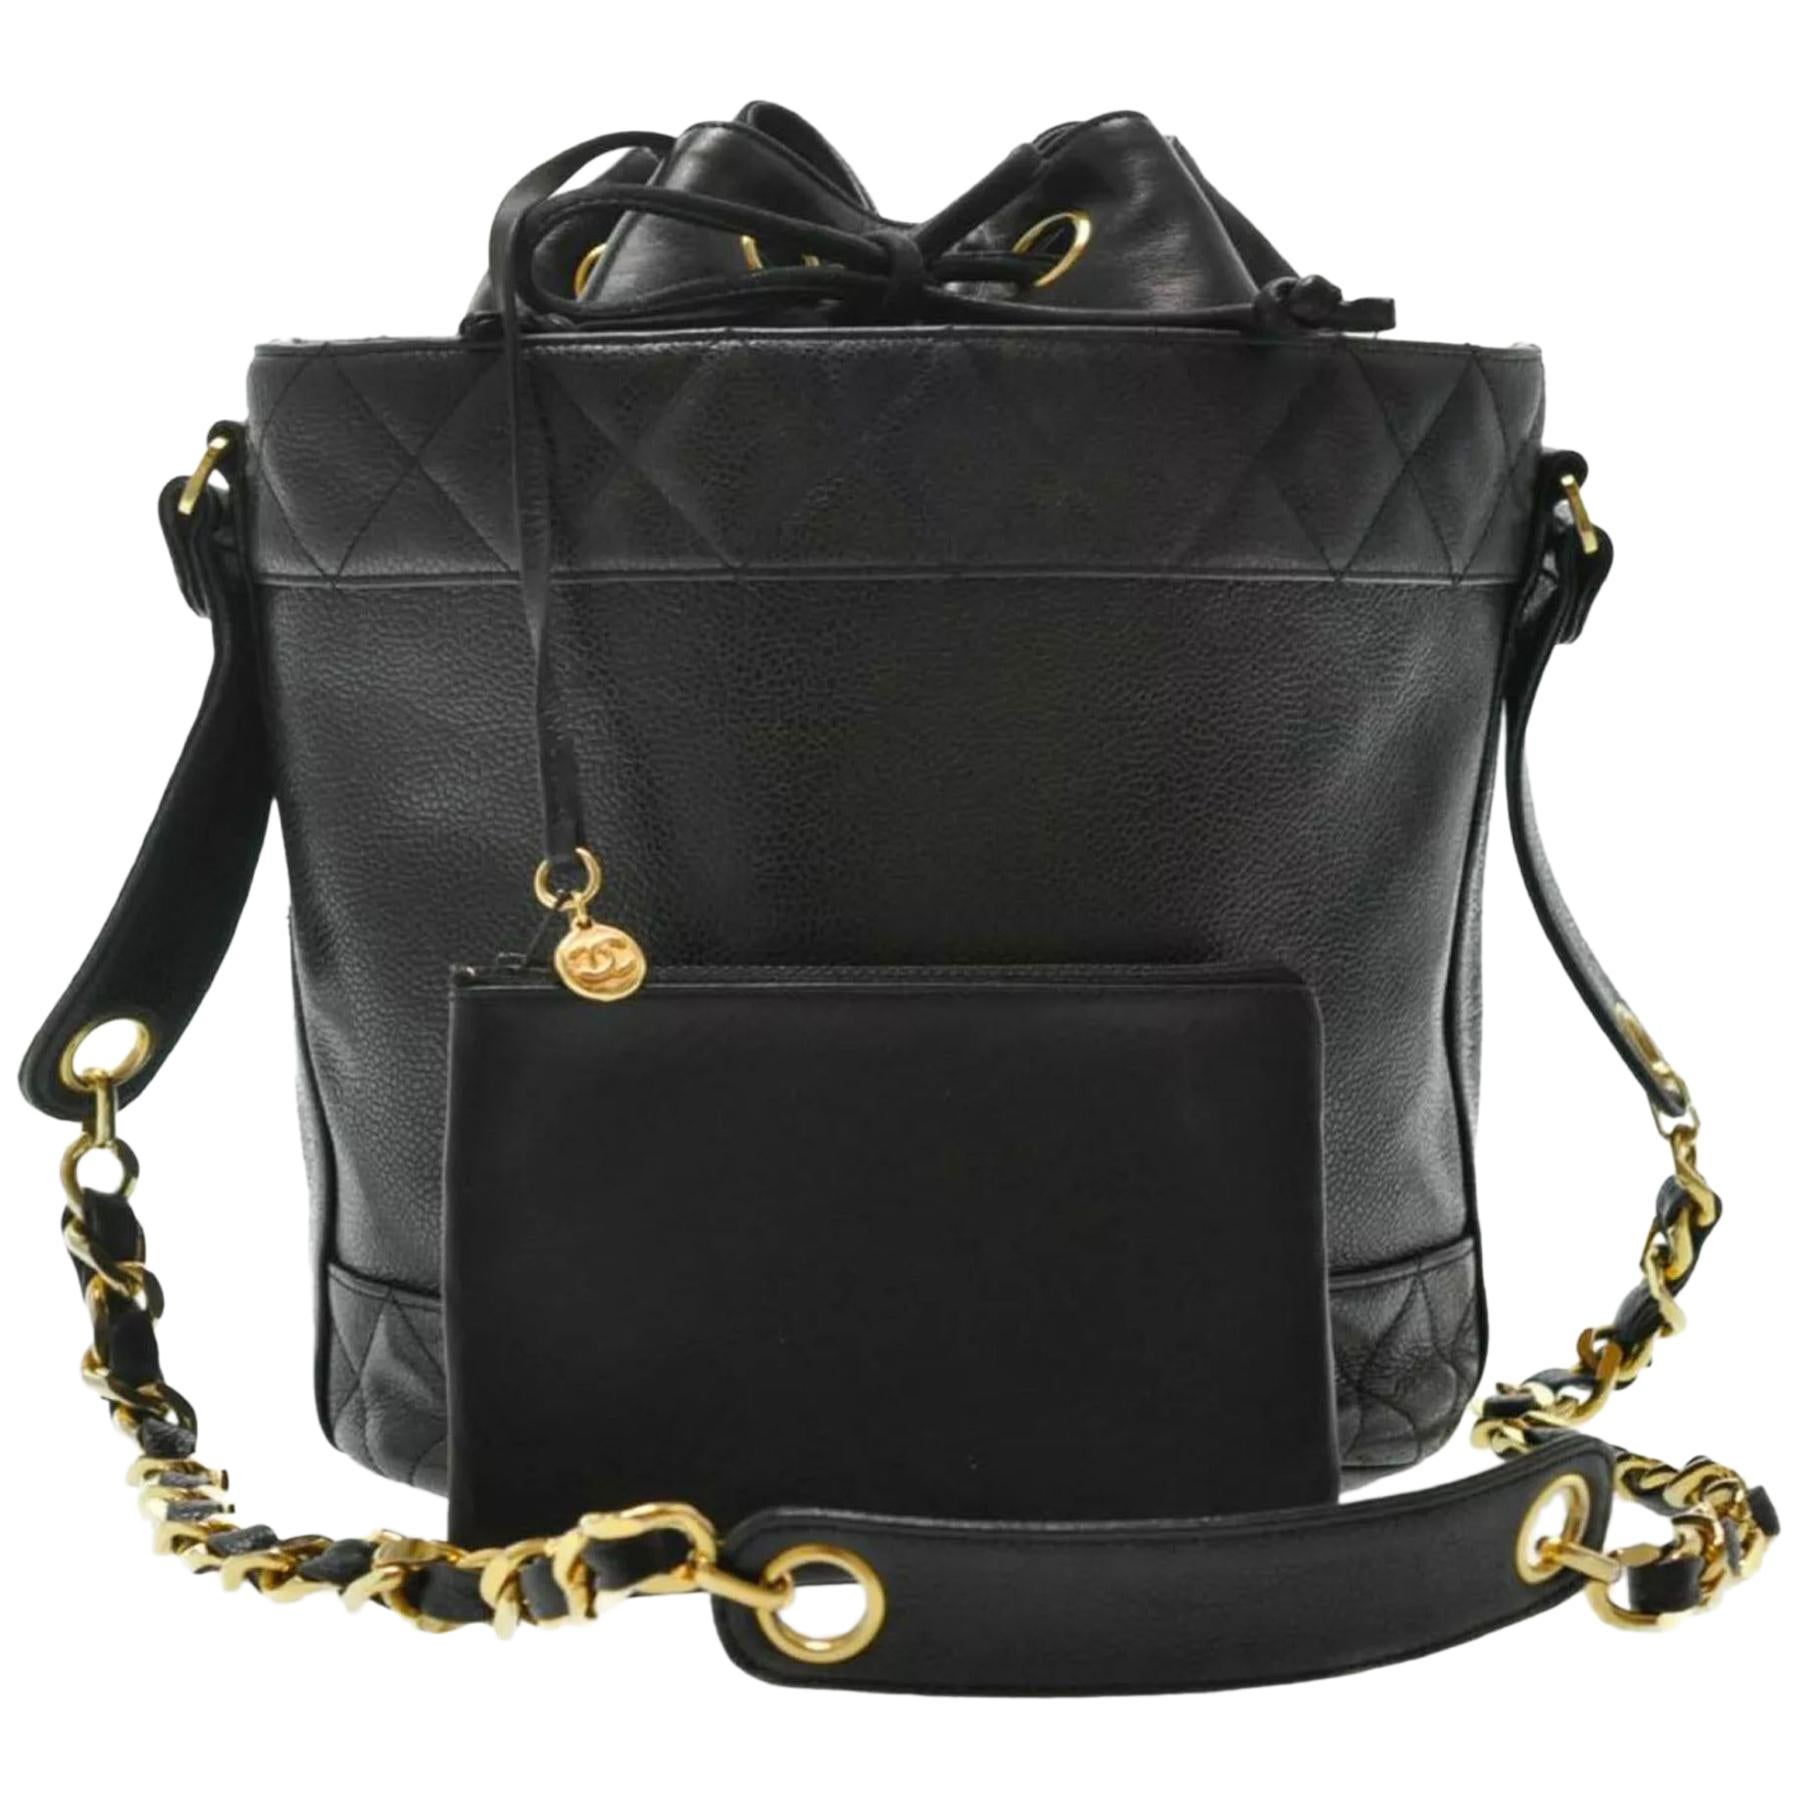 Chanel 90's Black Iconic Bucket Bag

Couleur : noir, or
Condit : Très bon ; décoloration mineure sur la quincaillerie. Veuillez vous référer aux photos.
Dimensions : 9